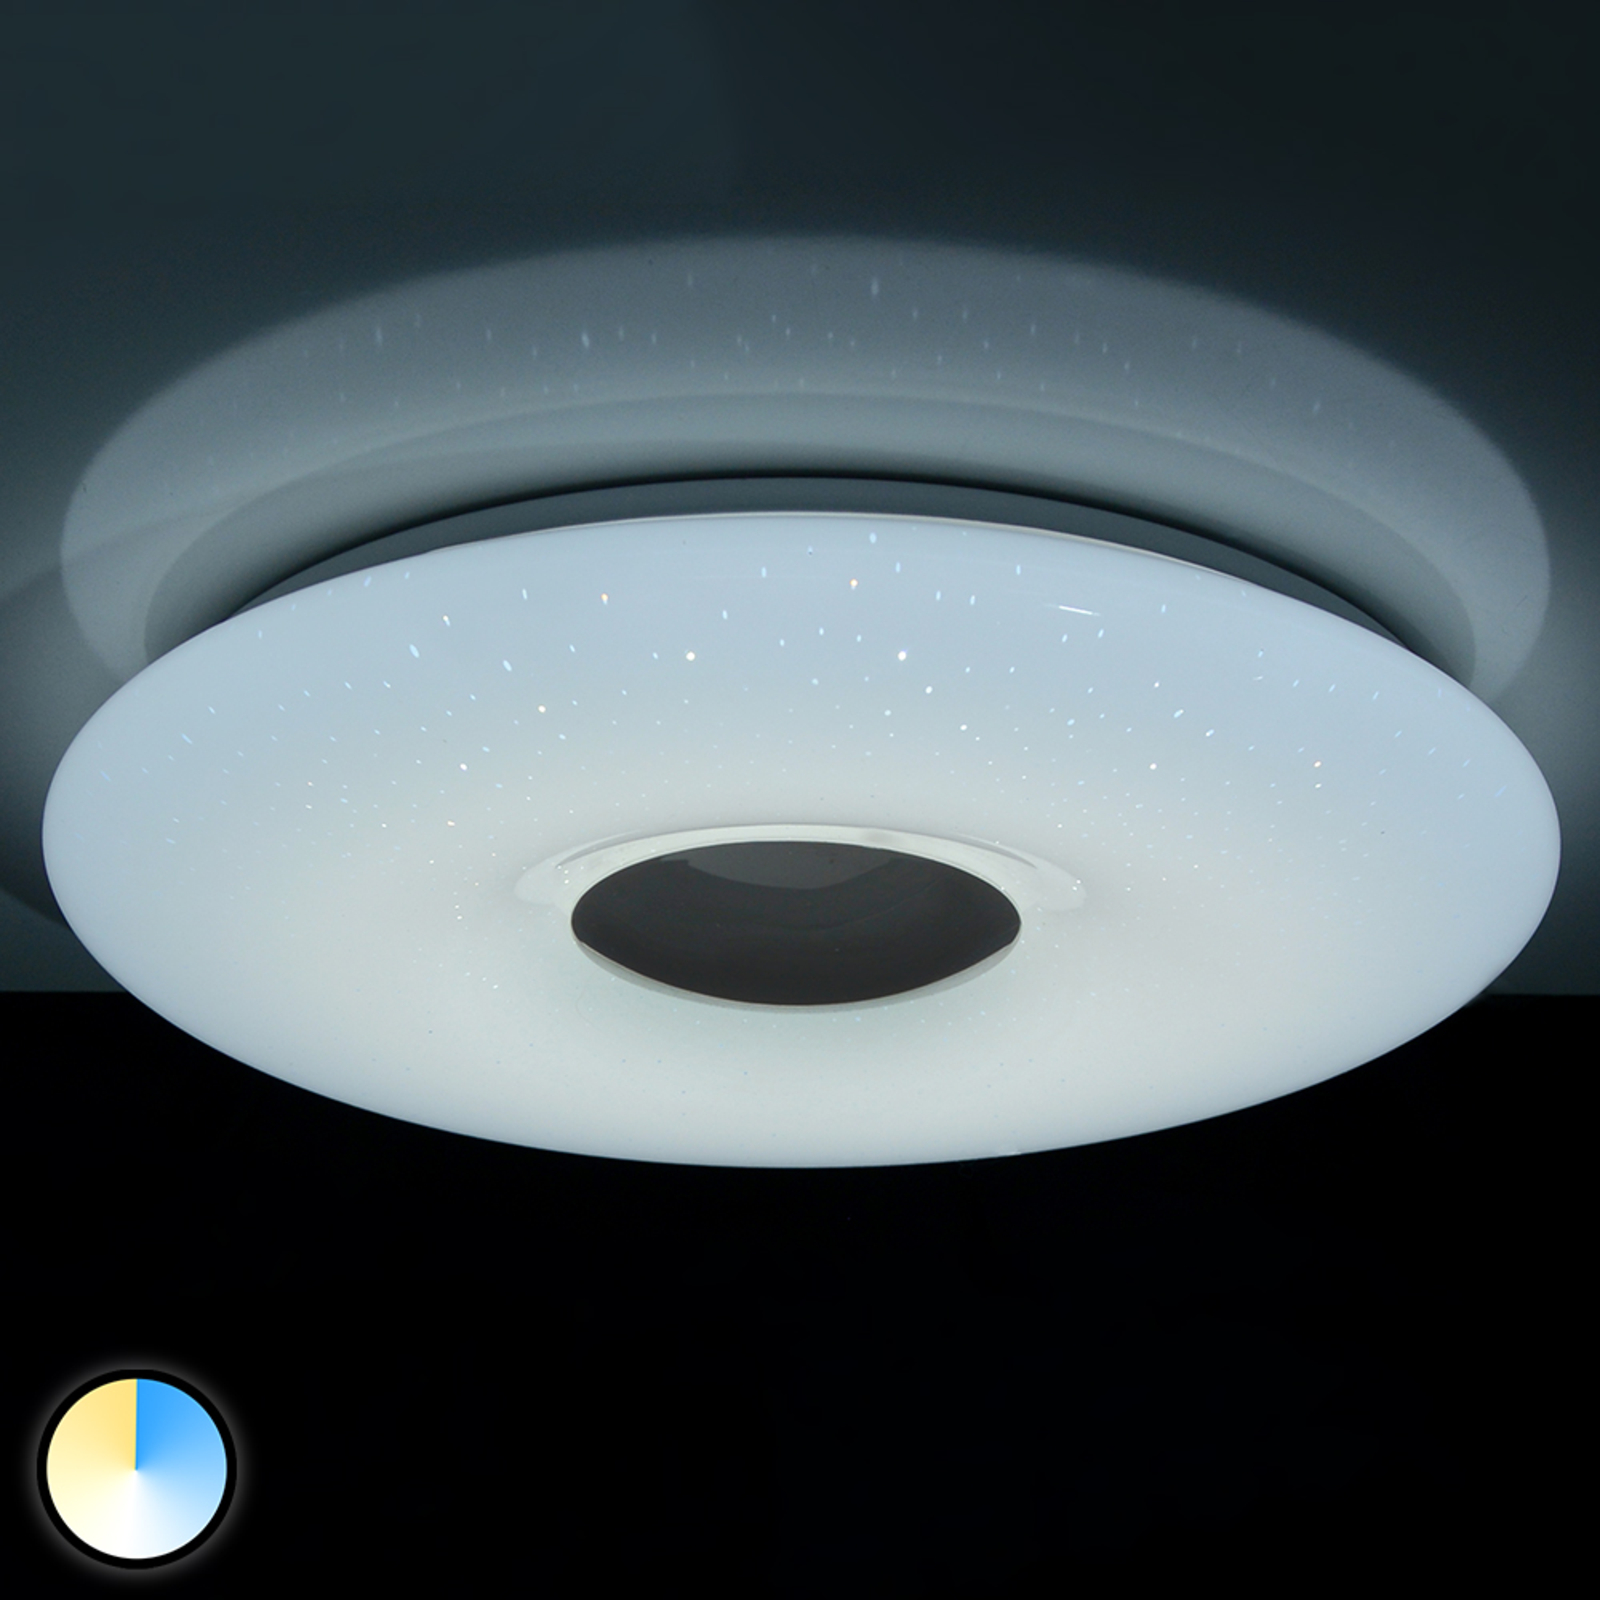 klauw Vergelijkbaar afbetalen Verona - Led plafondlamp met afstandsbediening | Lampen24.be